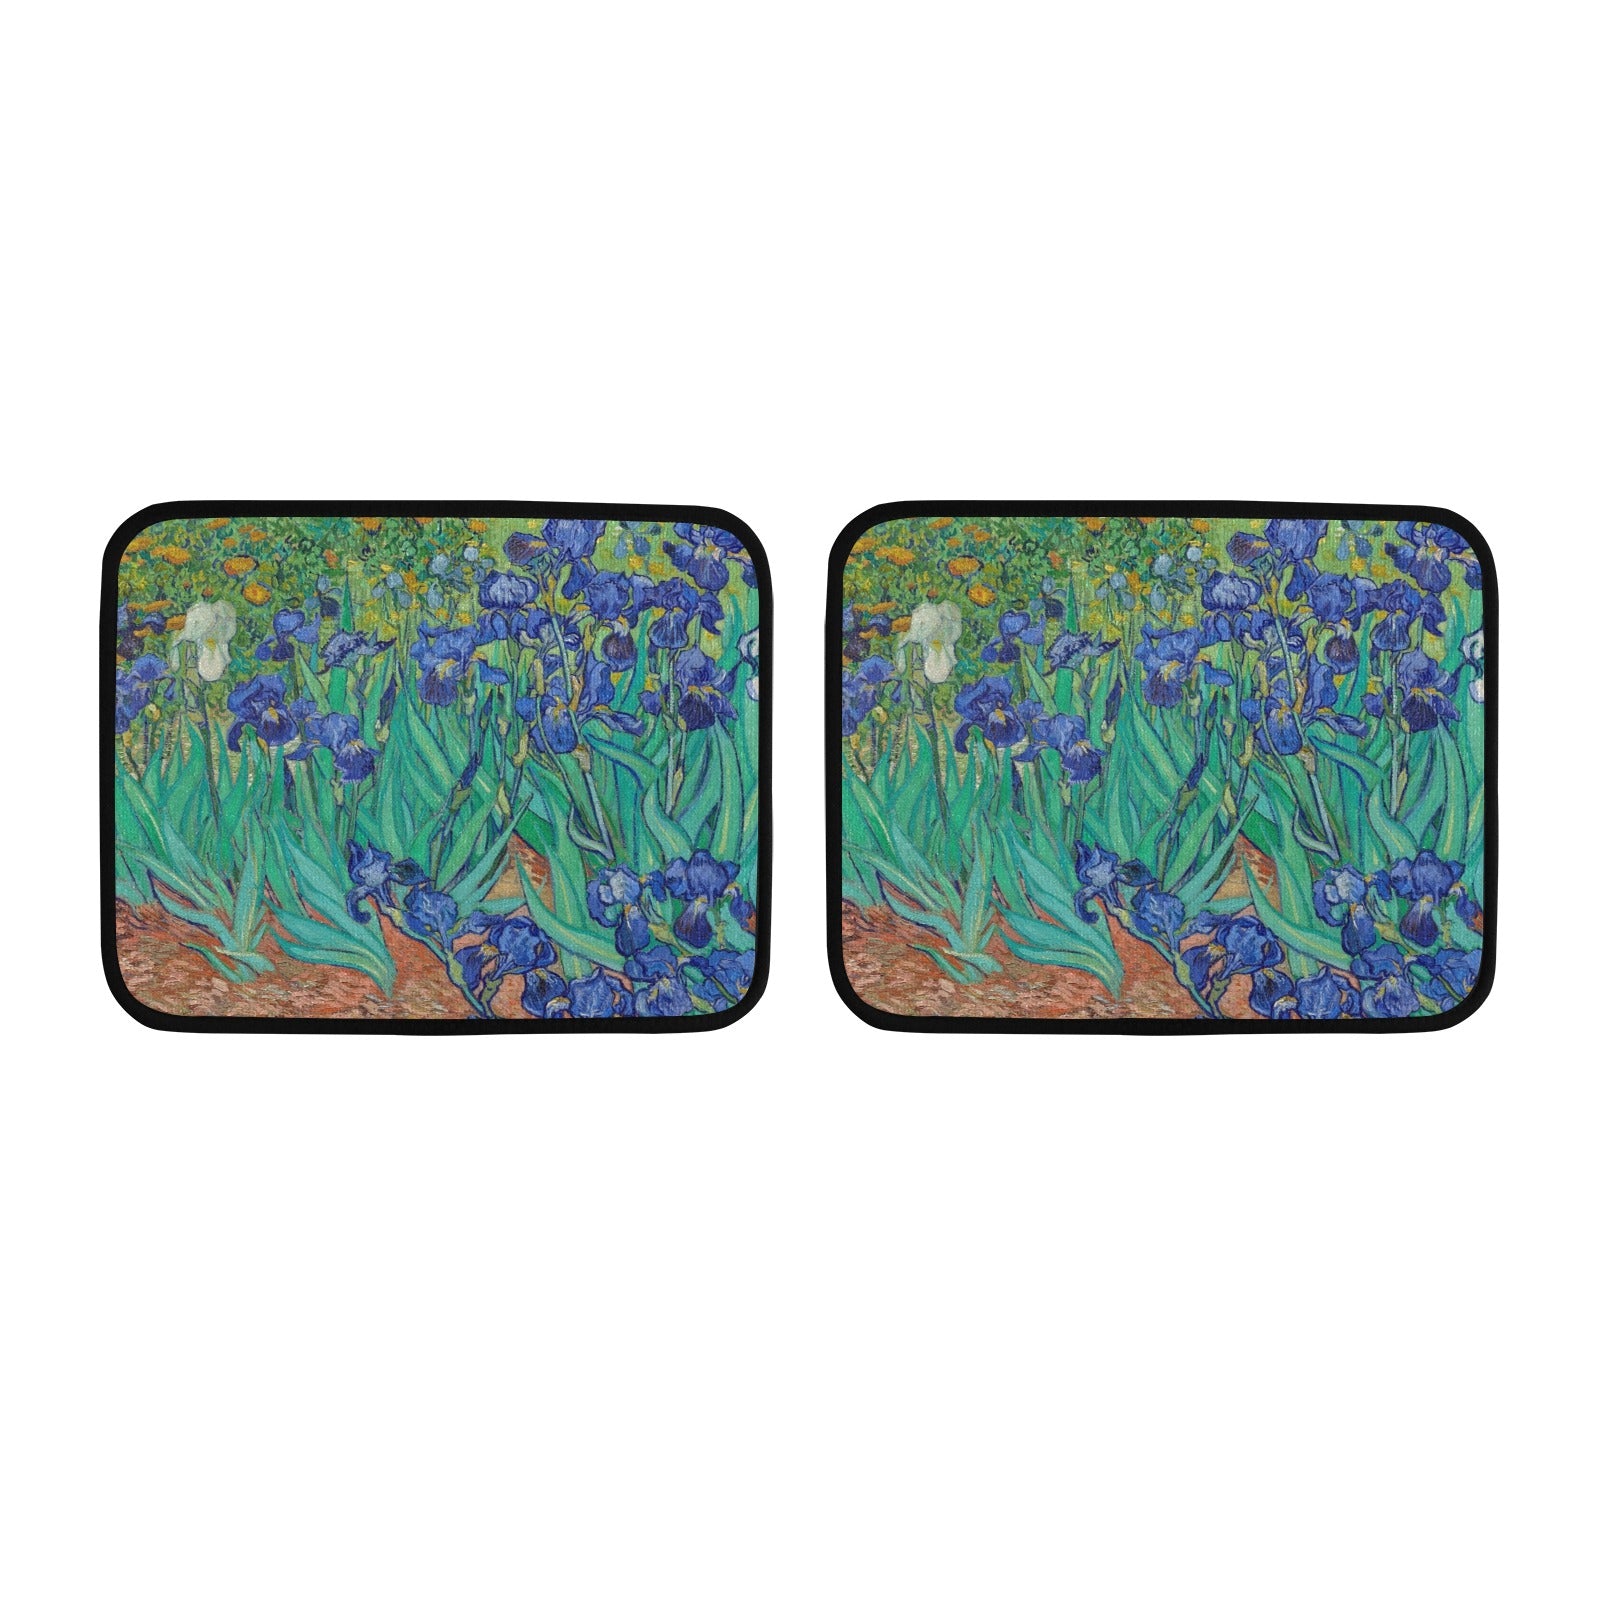 Irises by Van Gogh Back Floor Mats (2pcs)